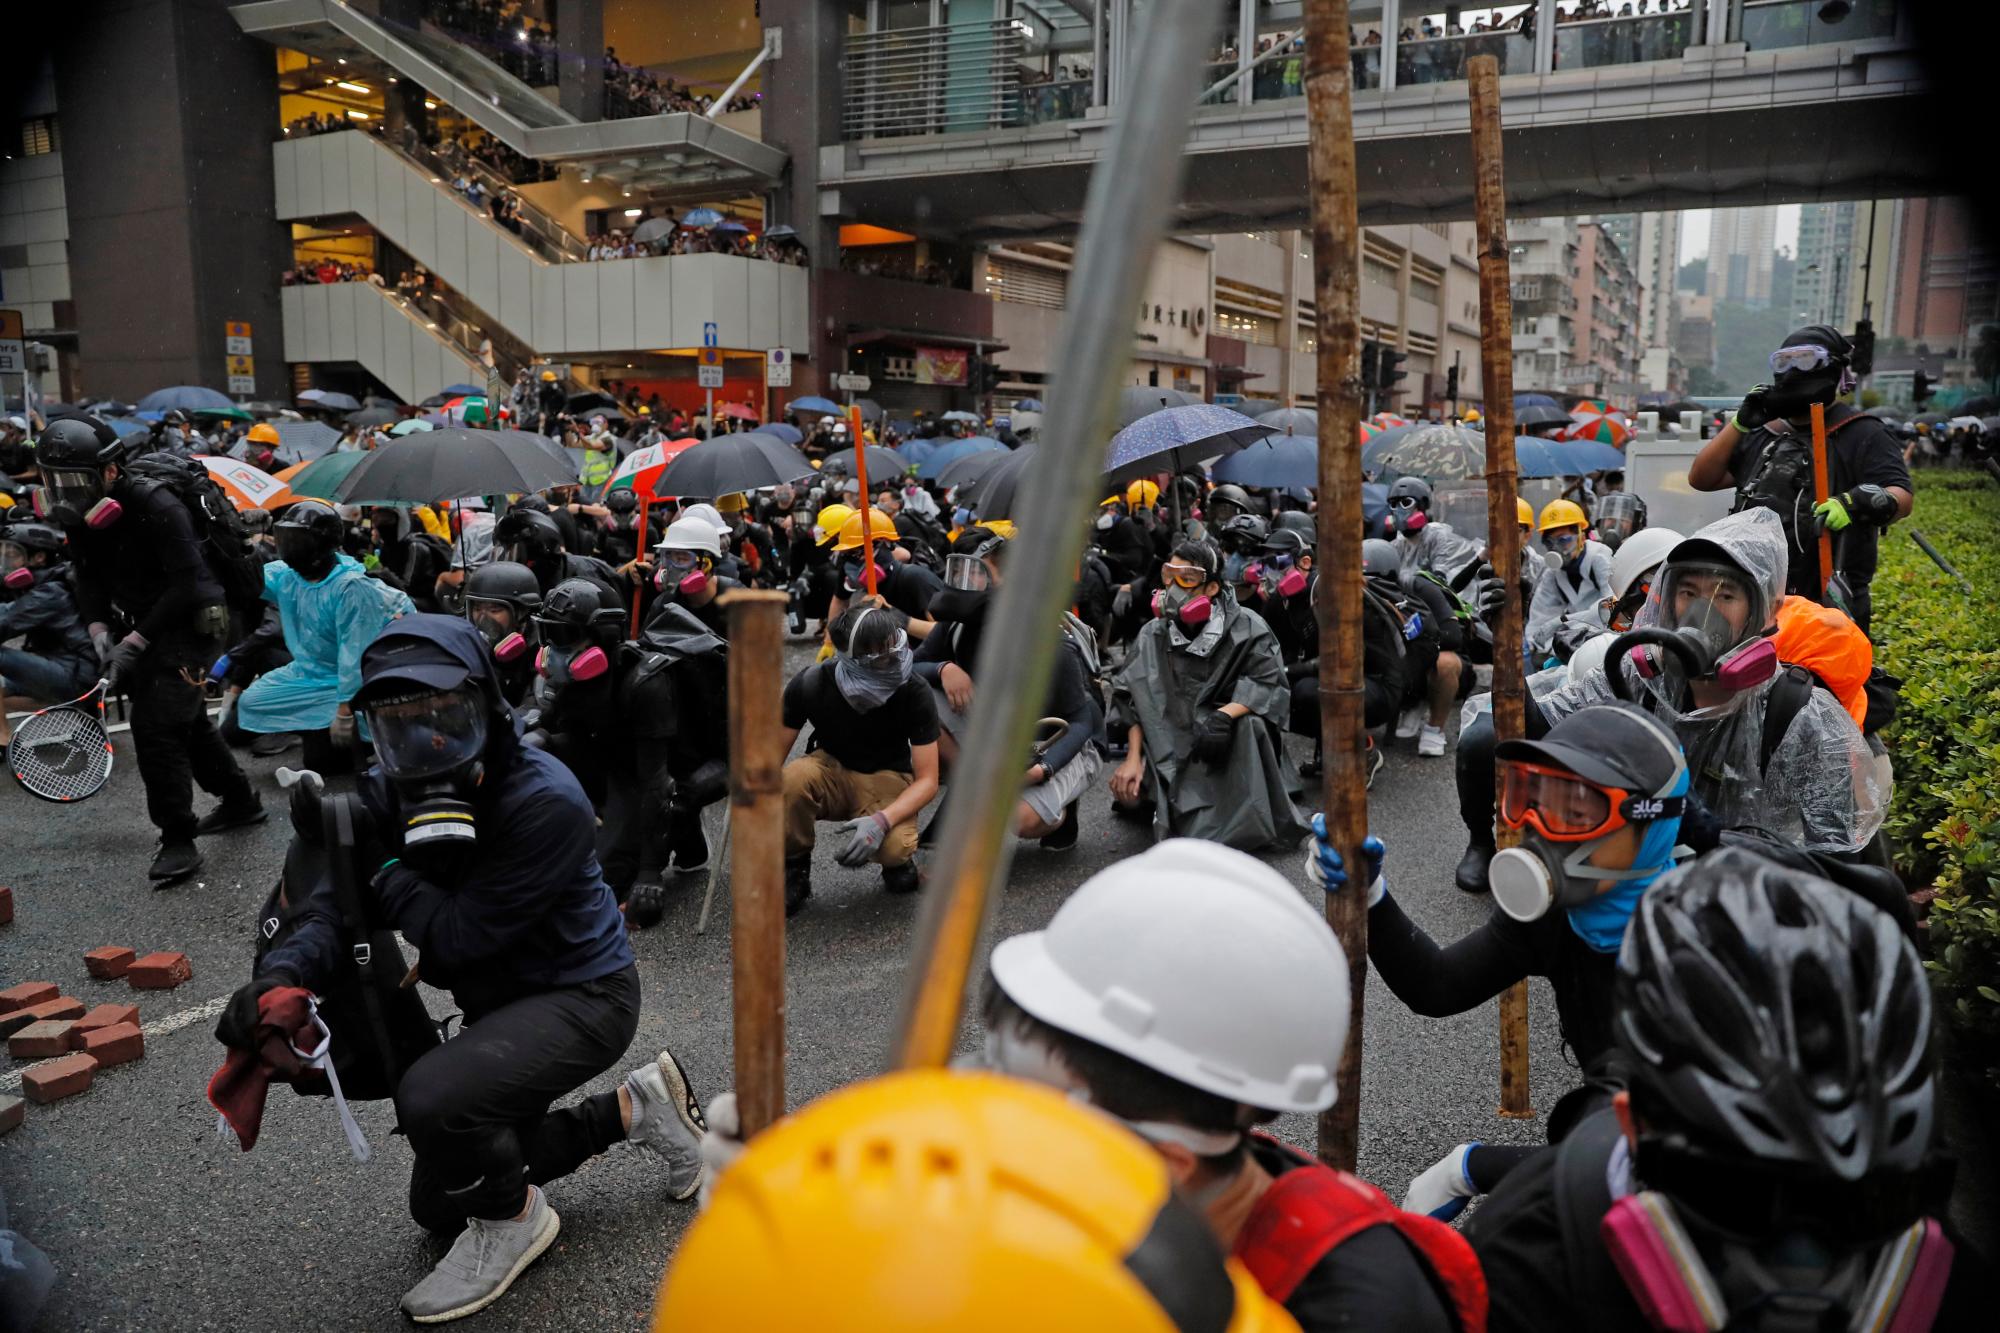 Los manifestantes se agachan detrás de una barricada durante una protesta en Hong Kong, el domingo 25 de agosto de 2019. La policía en Hong Kong usó gases lacrimógenos el domingo para despejar a los manifestantes prodemocráticos que se habían apoderado de una calle y se usaron camiones de cañones de agua por primera vez. 